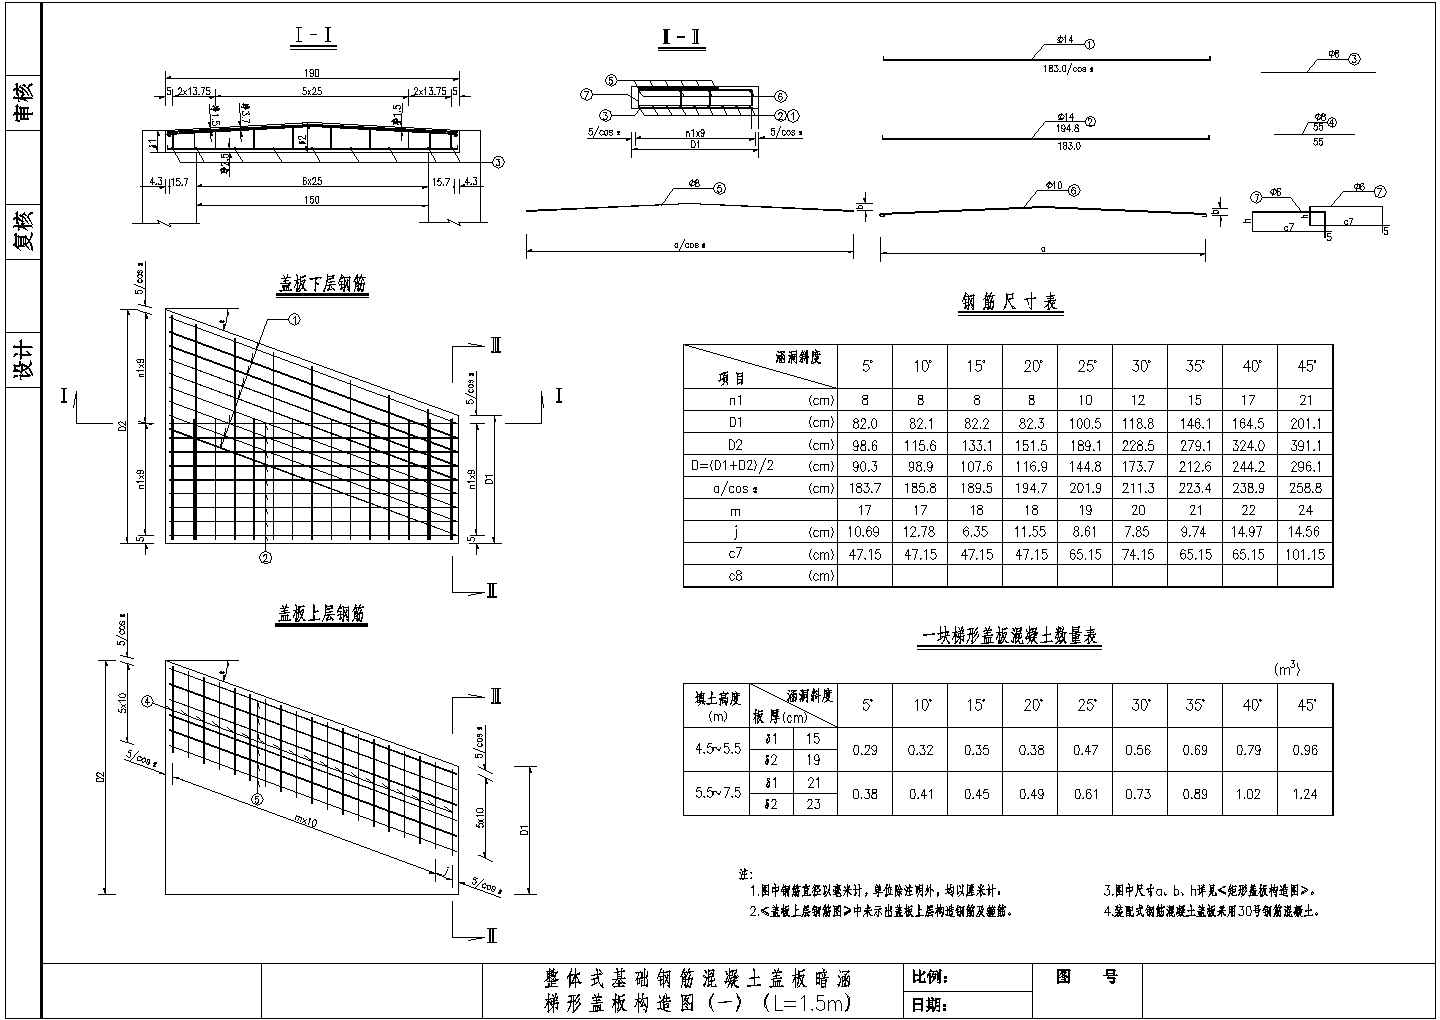 整体式基础钢筋砼盖板暗涵通用设计图